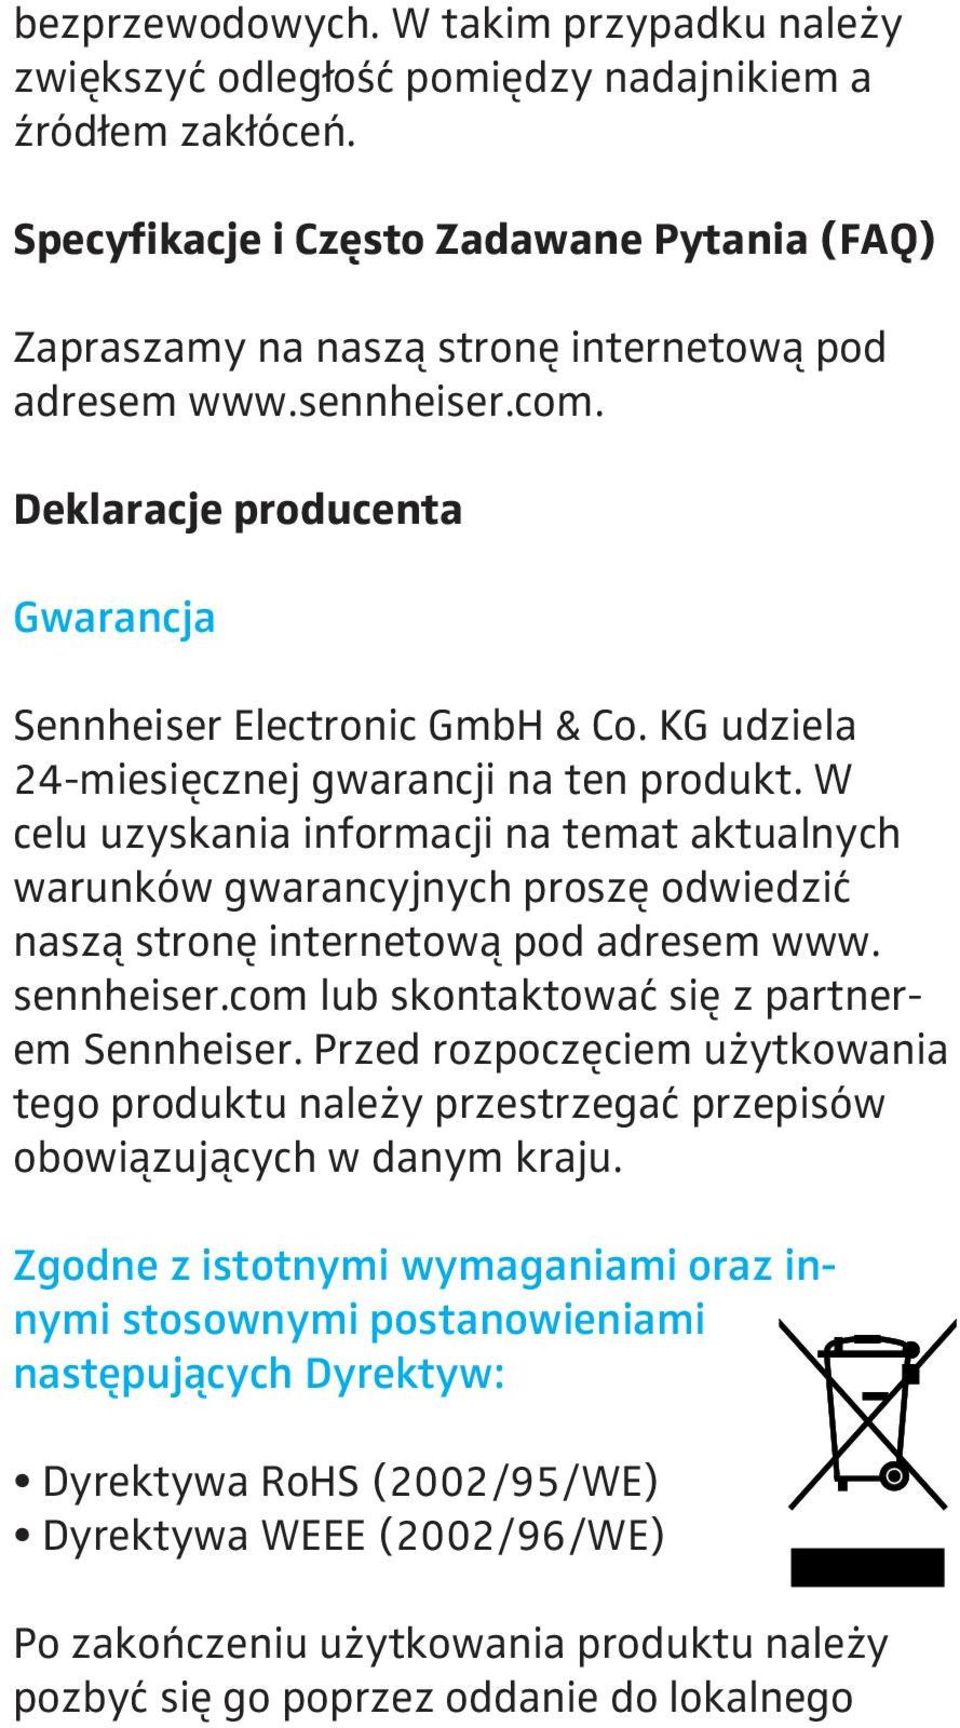 KG udziela 24-miesięcznej gwarancji na ten produkt. W celu uzyskania informacji na temat aktualnych warunków gwarancyjnych proszę odwiedzić naszą stronę internetową pod adresem www. sennheiser.